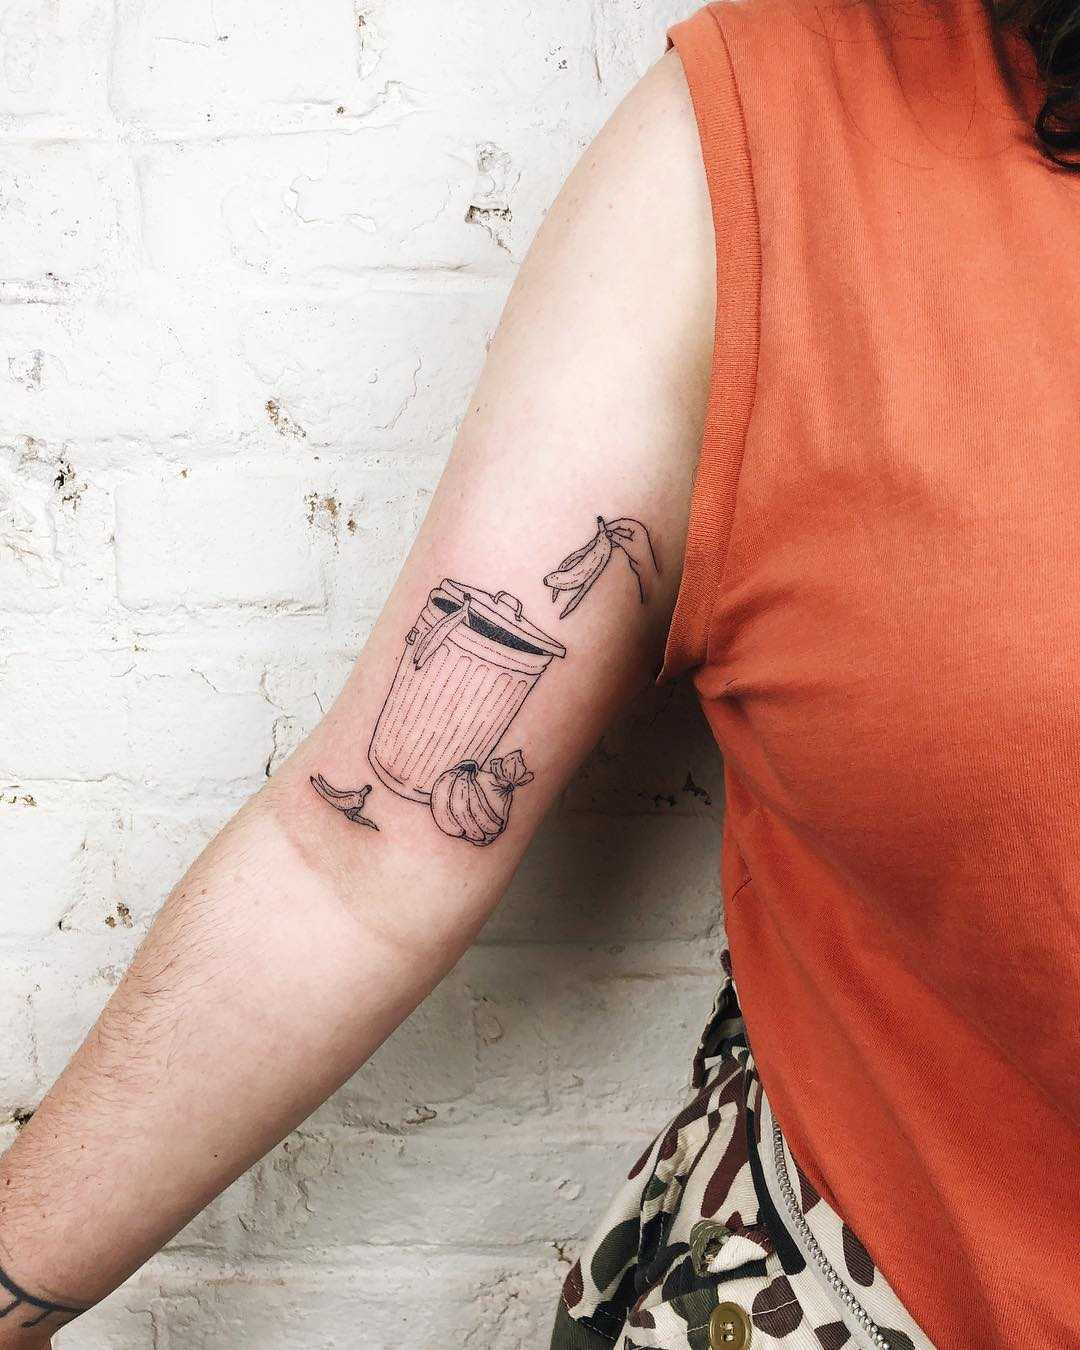 Trash can tattoo by Kelli Kikcio